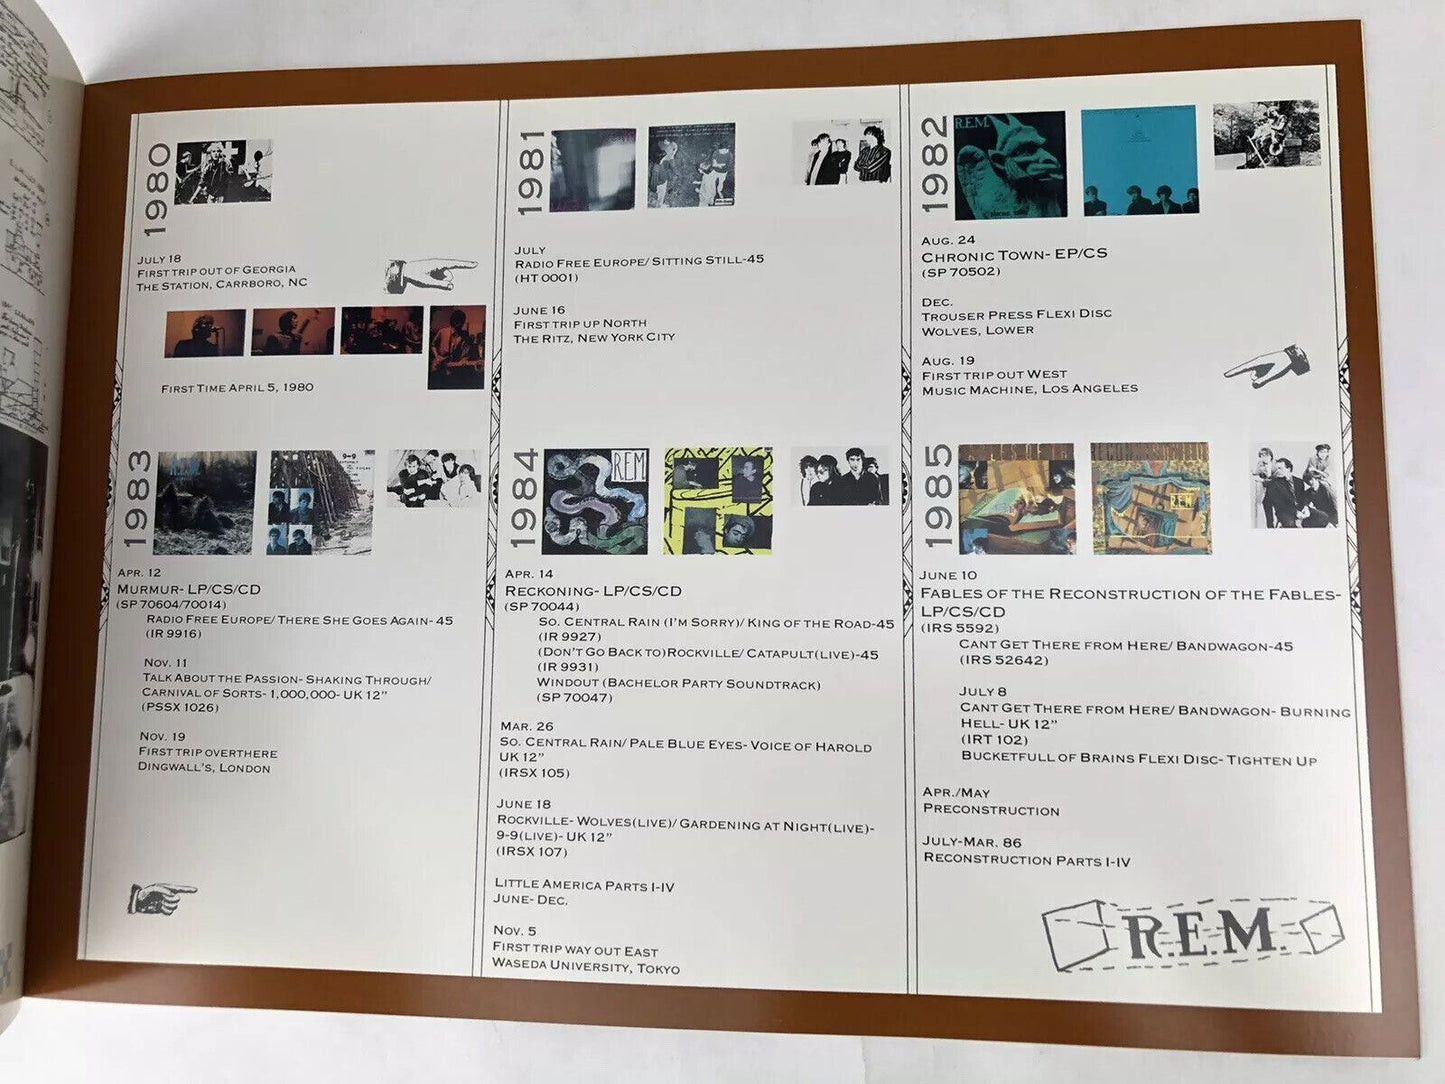 Vintage R.E.M. 'Ponders Perpetual Motion' 1985 Reconstruction Tour Program